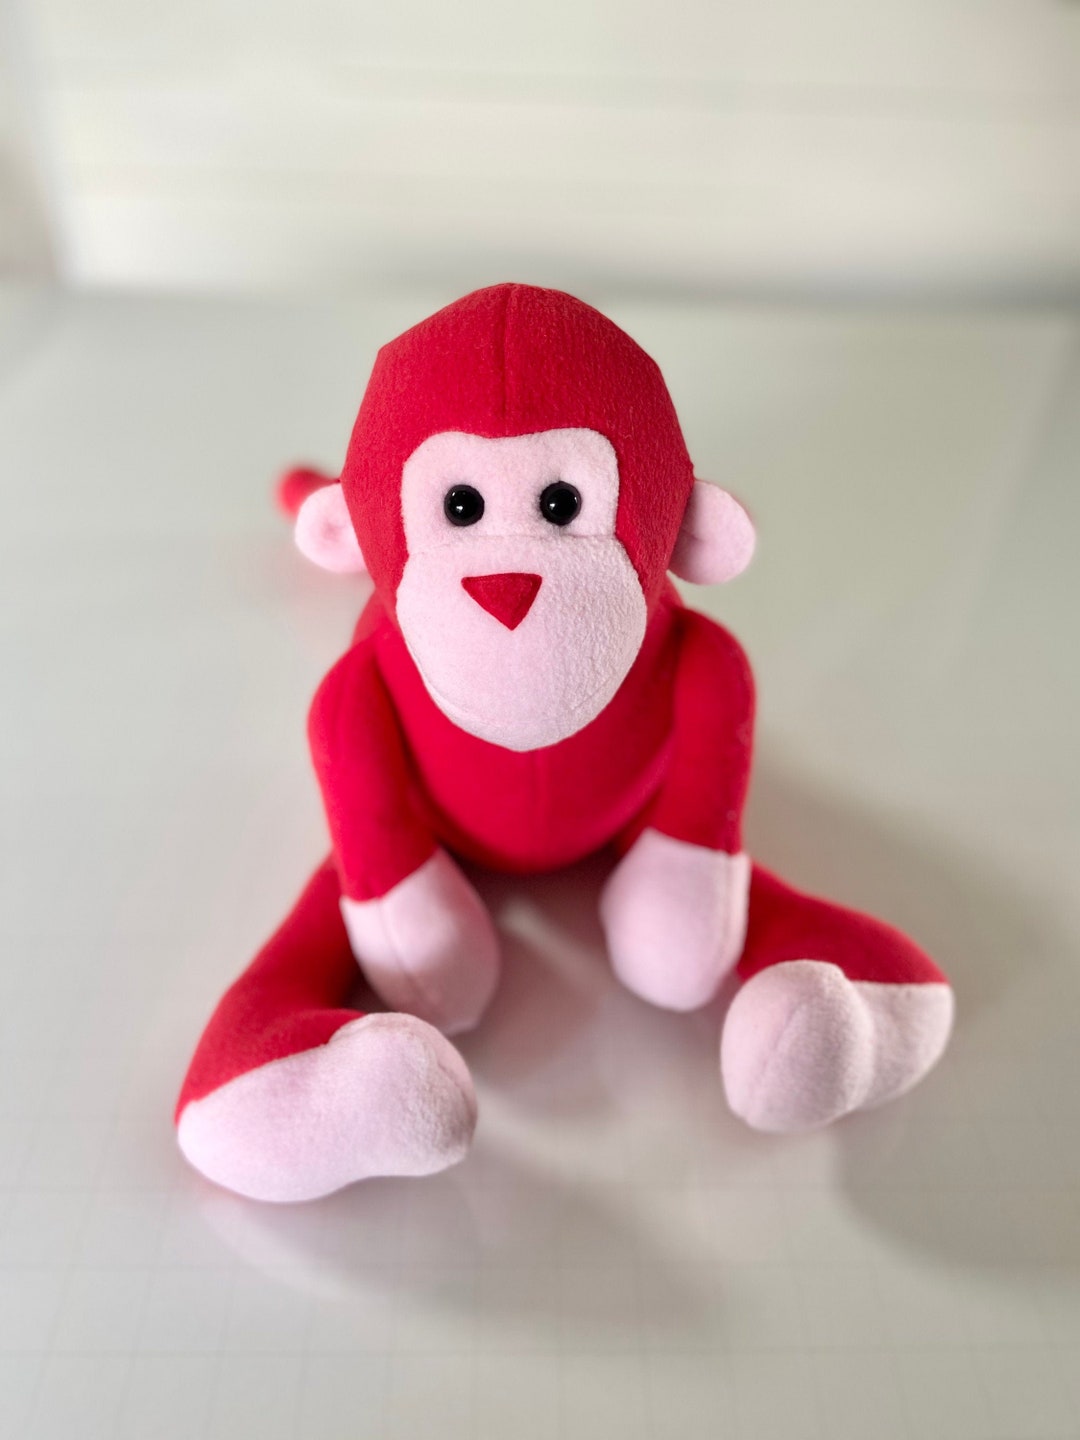 Red Stuffed Monkey Toy - Etsy